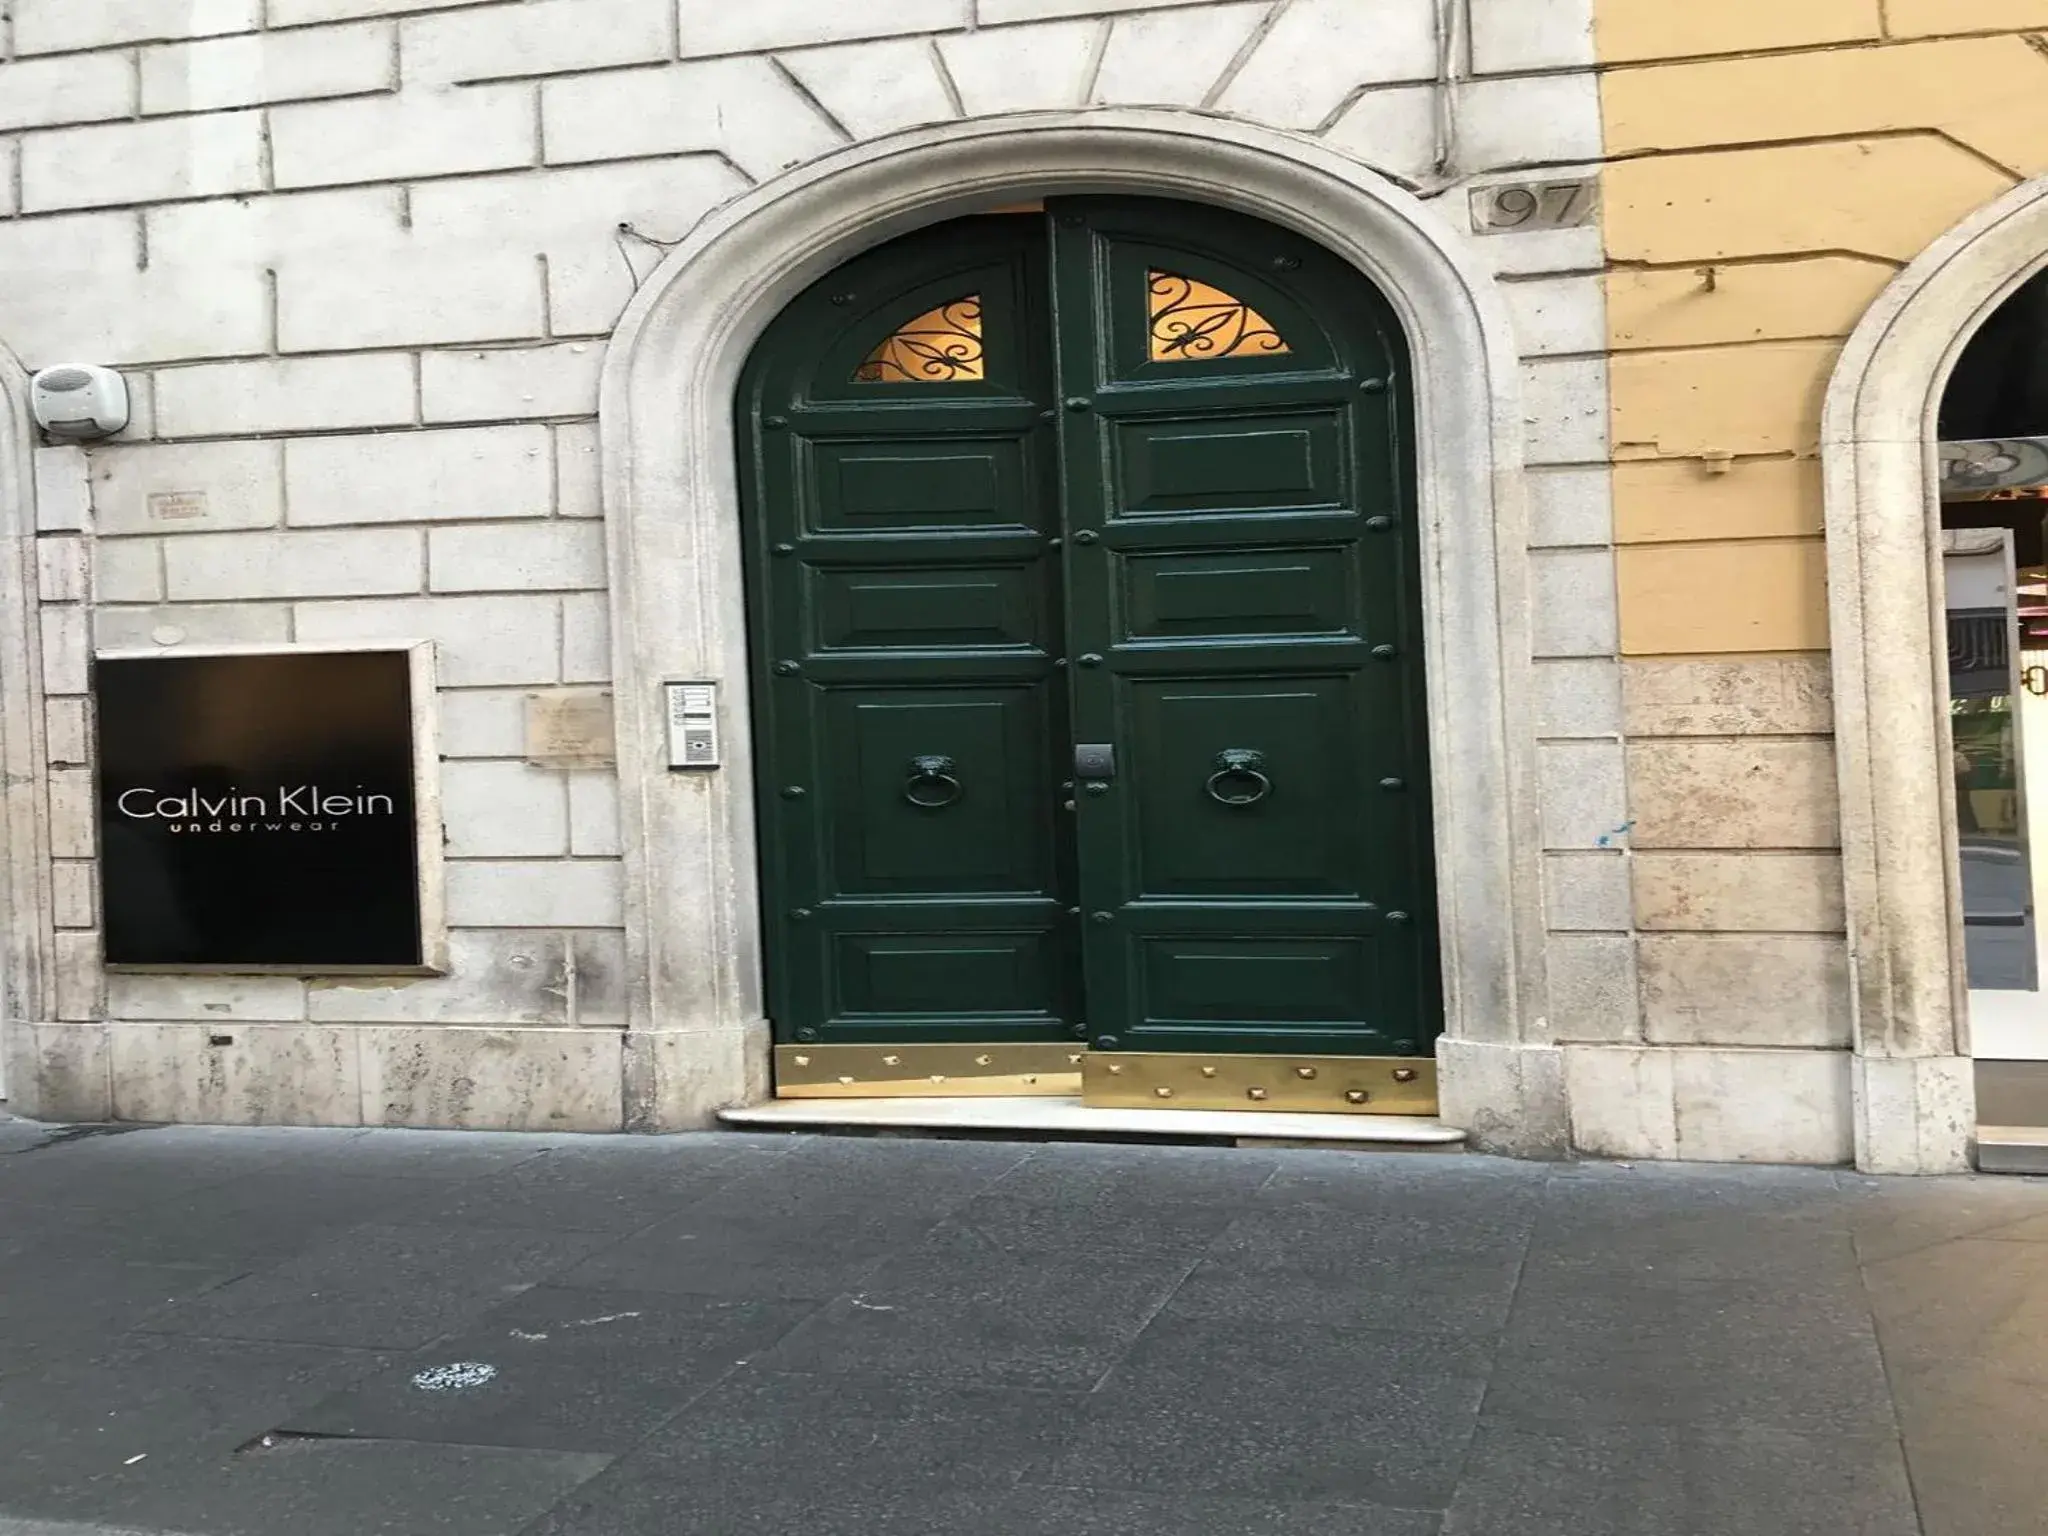 Property building, Facade/Entrance in Condotti Apartment